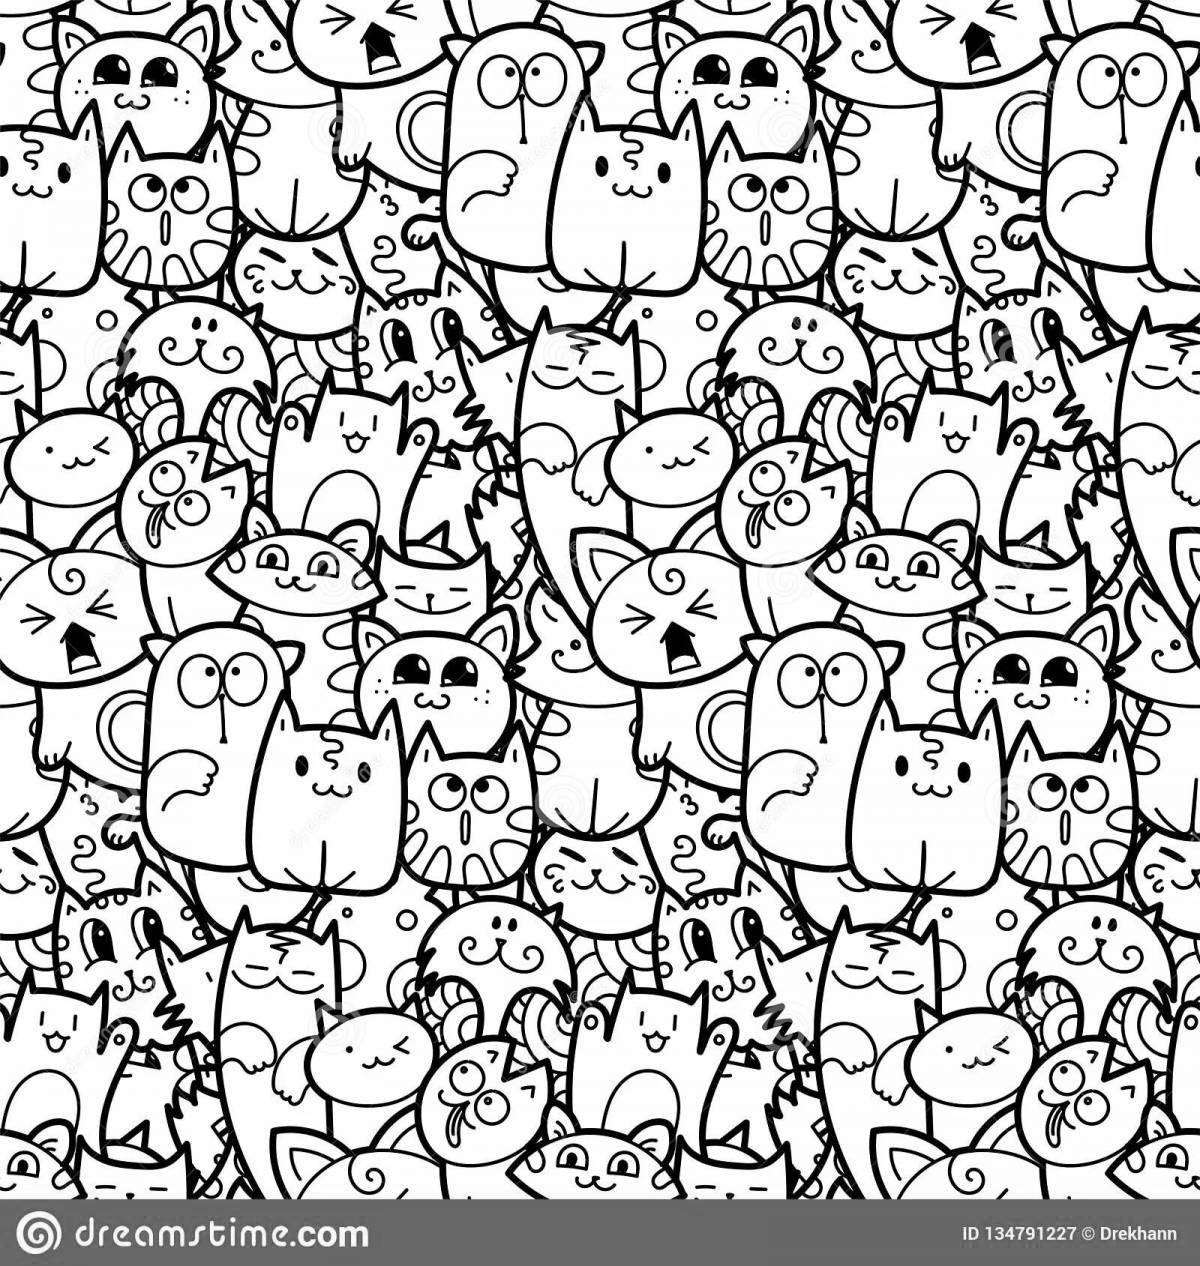 Игривый много кошек на одной странице